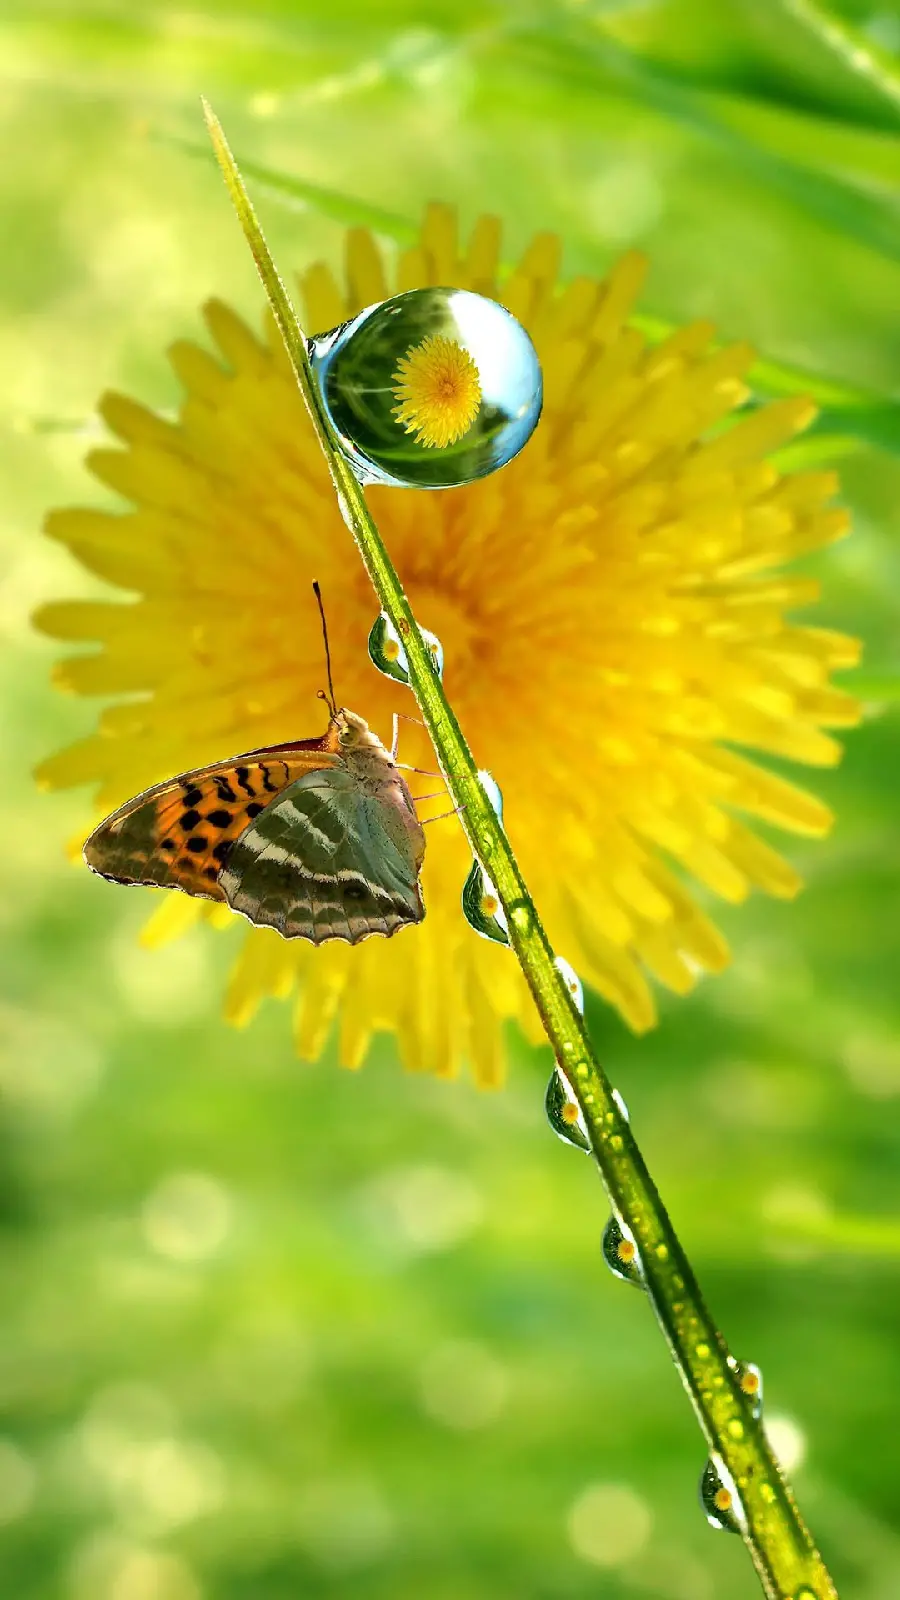 عکس پس زمینه رویایی پروانه فرچه پای نقره ای روی گل زرد برای آیفون 